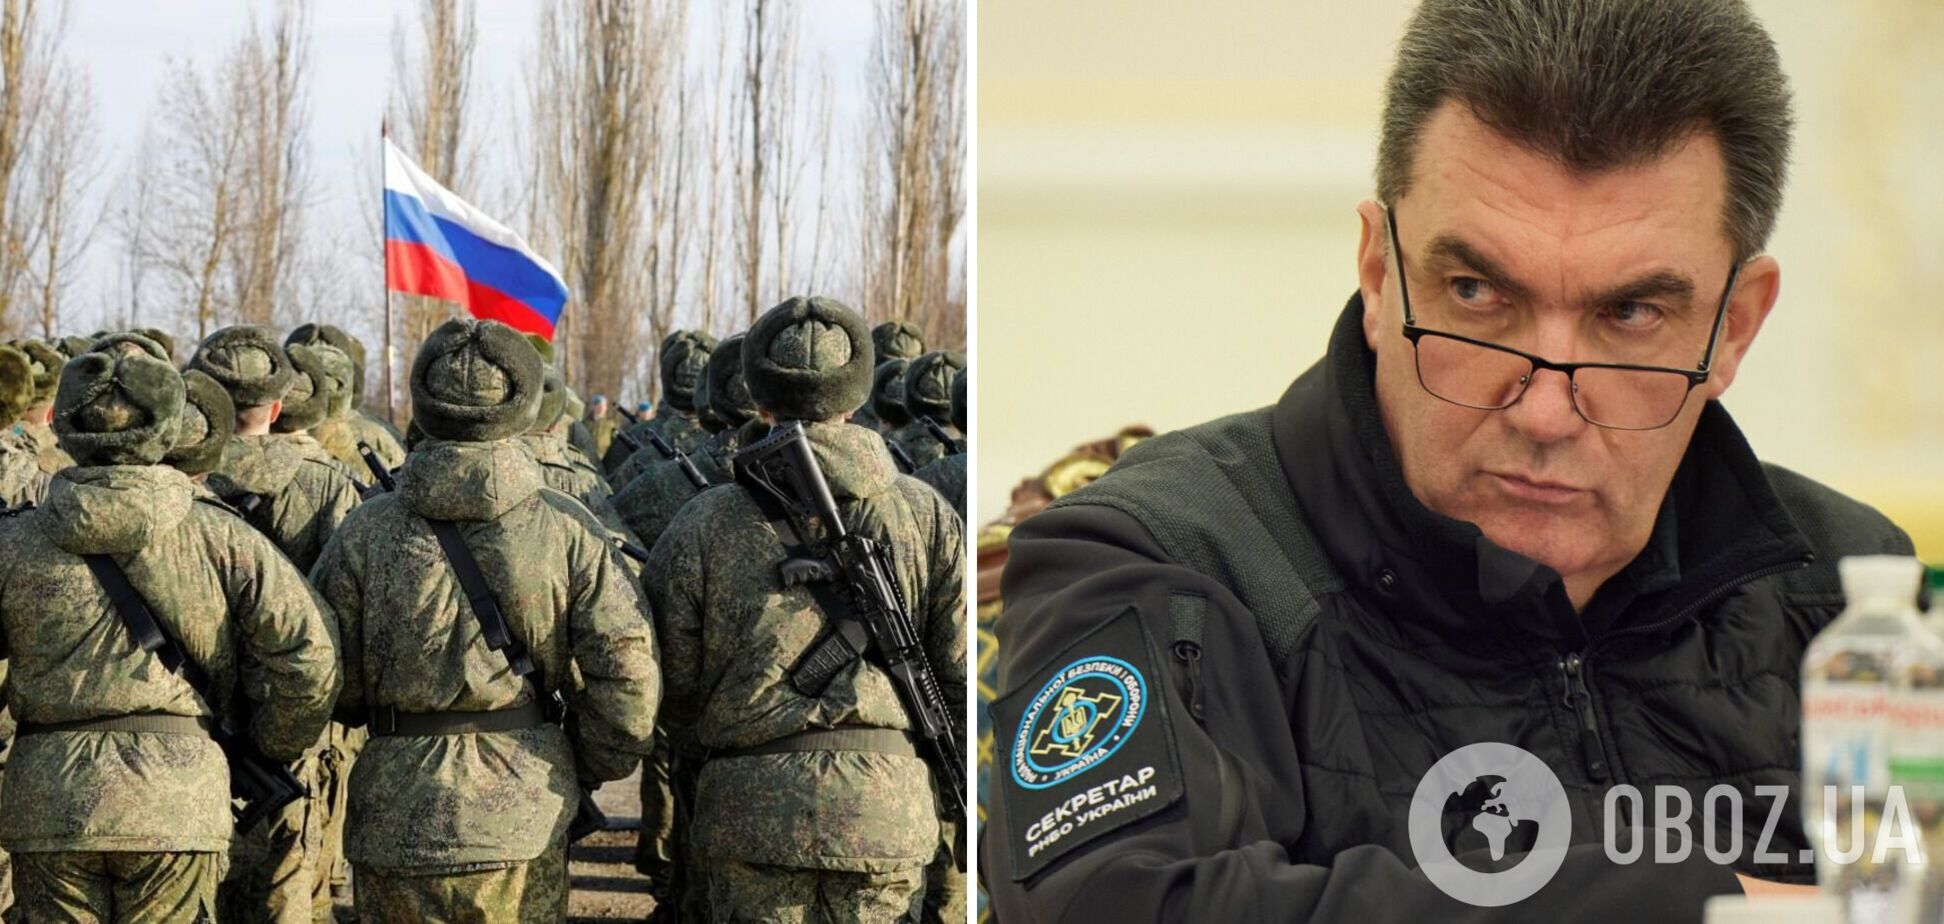 Данилов: армия РФ из-за санкций получает оружие пониженного качества и точности